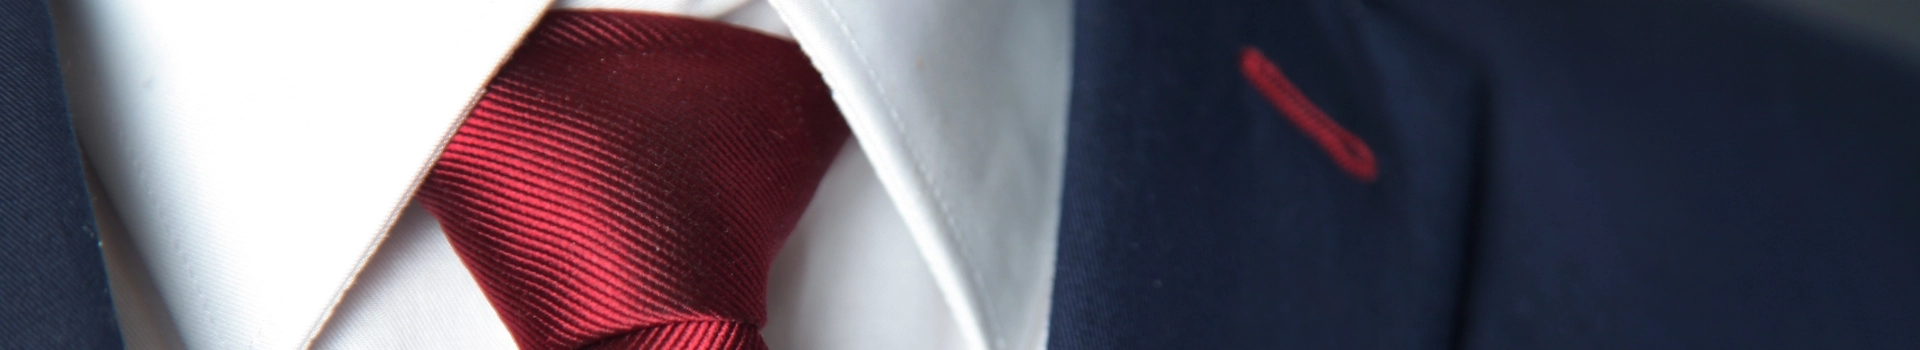 Czerwony krawat z białą koszulą i granatową marynarką